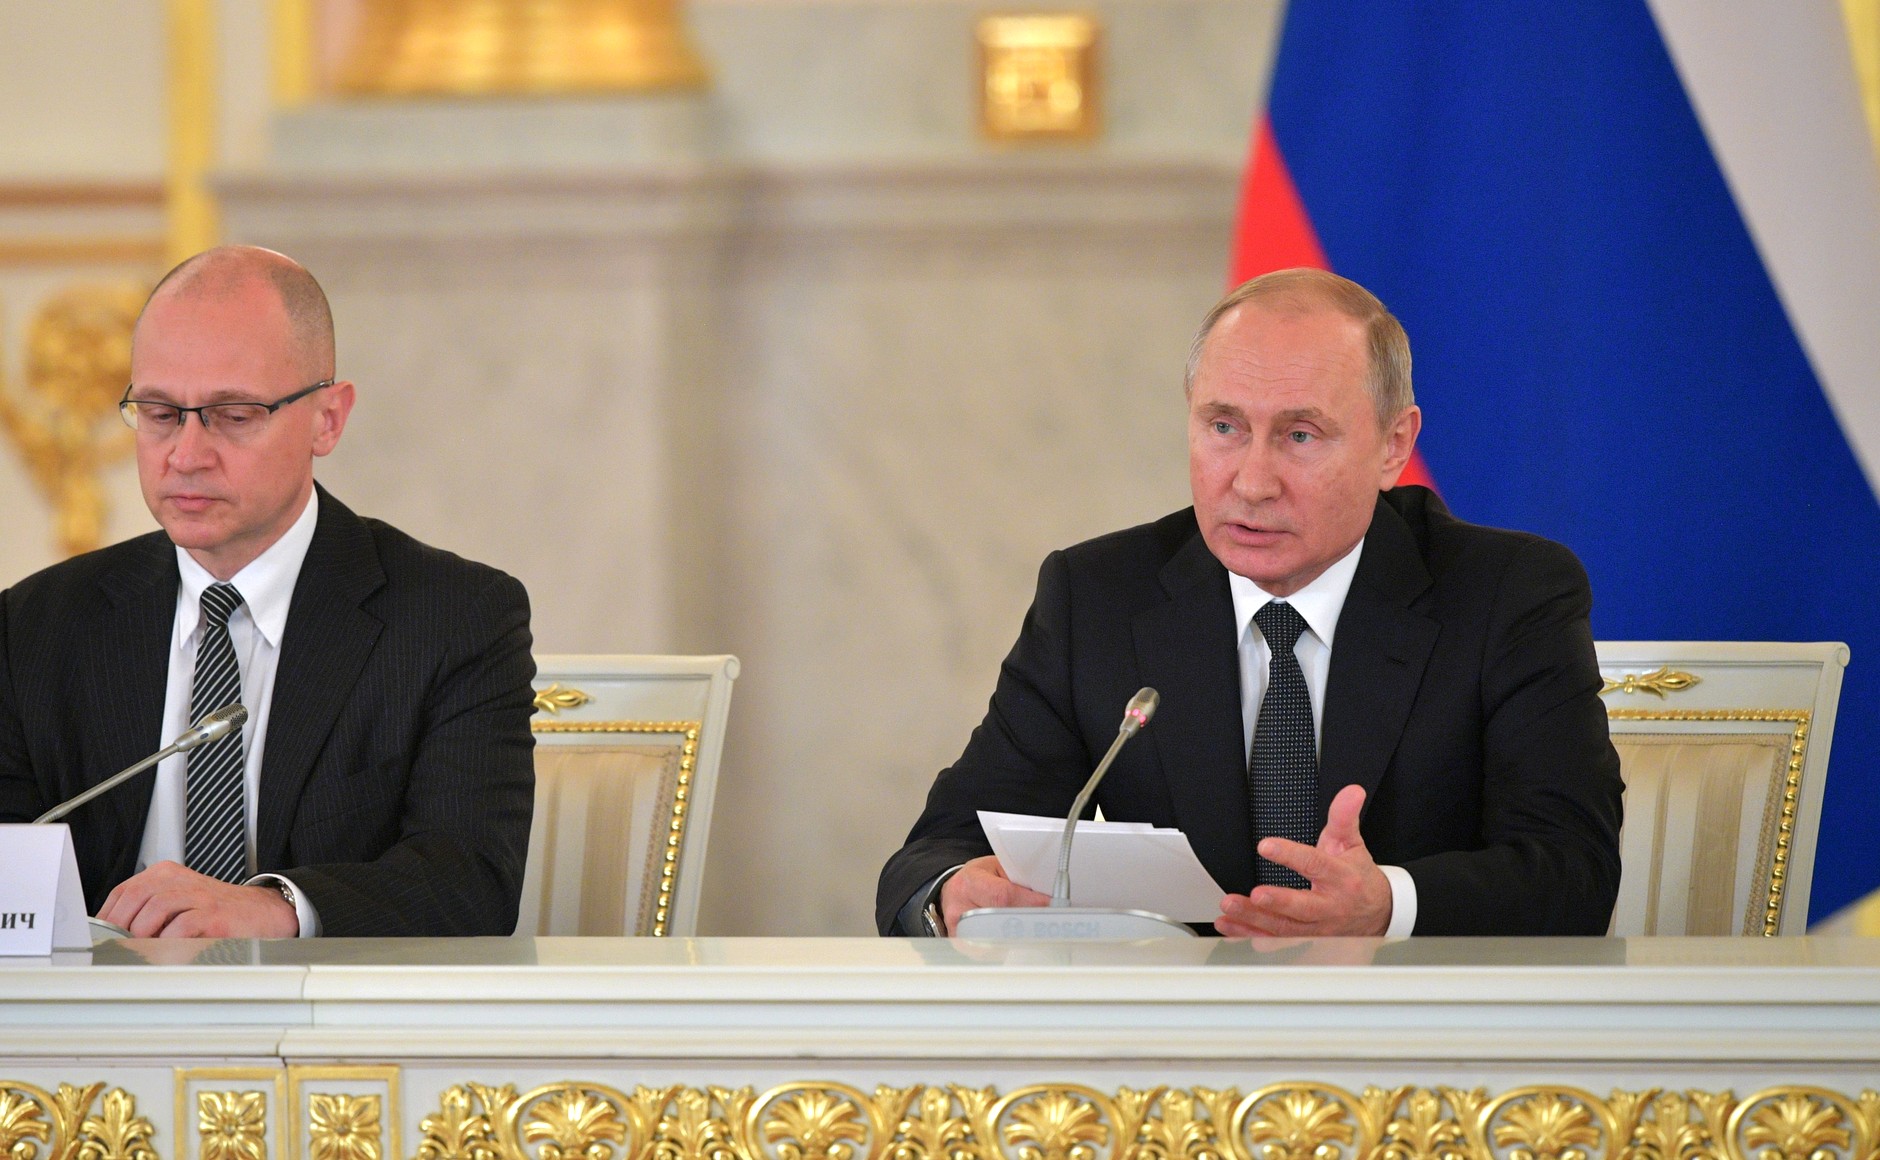 Первый заместитель руководителя администрации президента Сергей Кириенко и президент РФ Владимир Путин на заседании Совета по правам человека